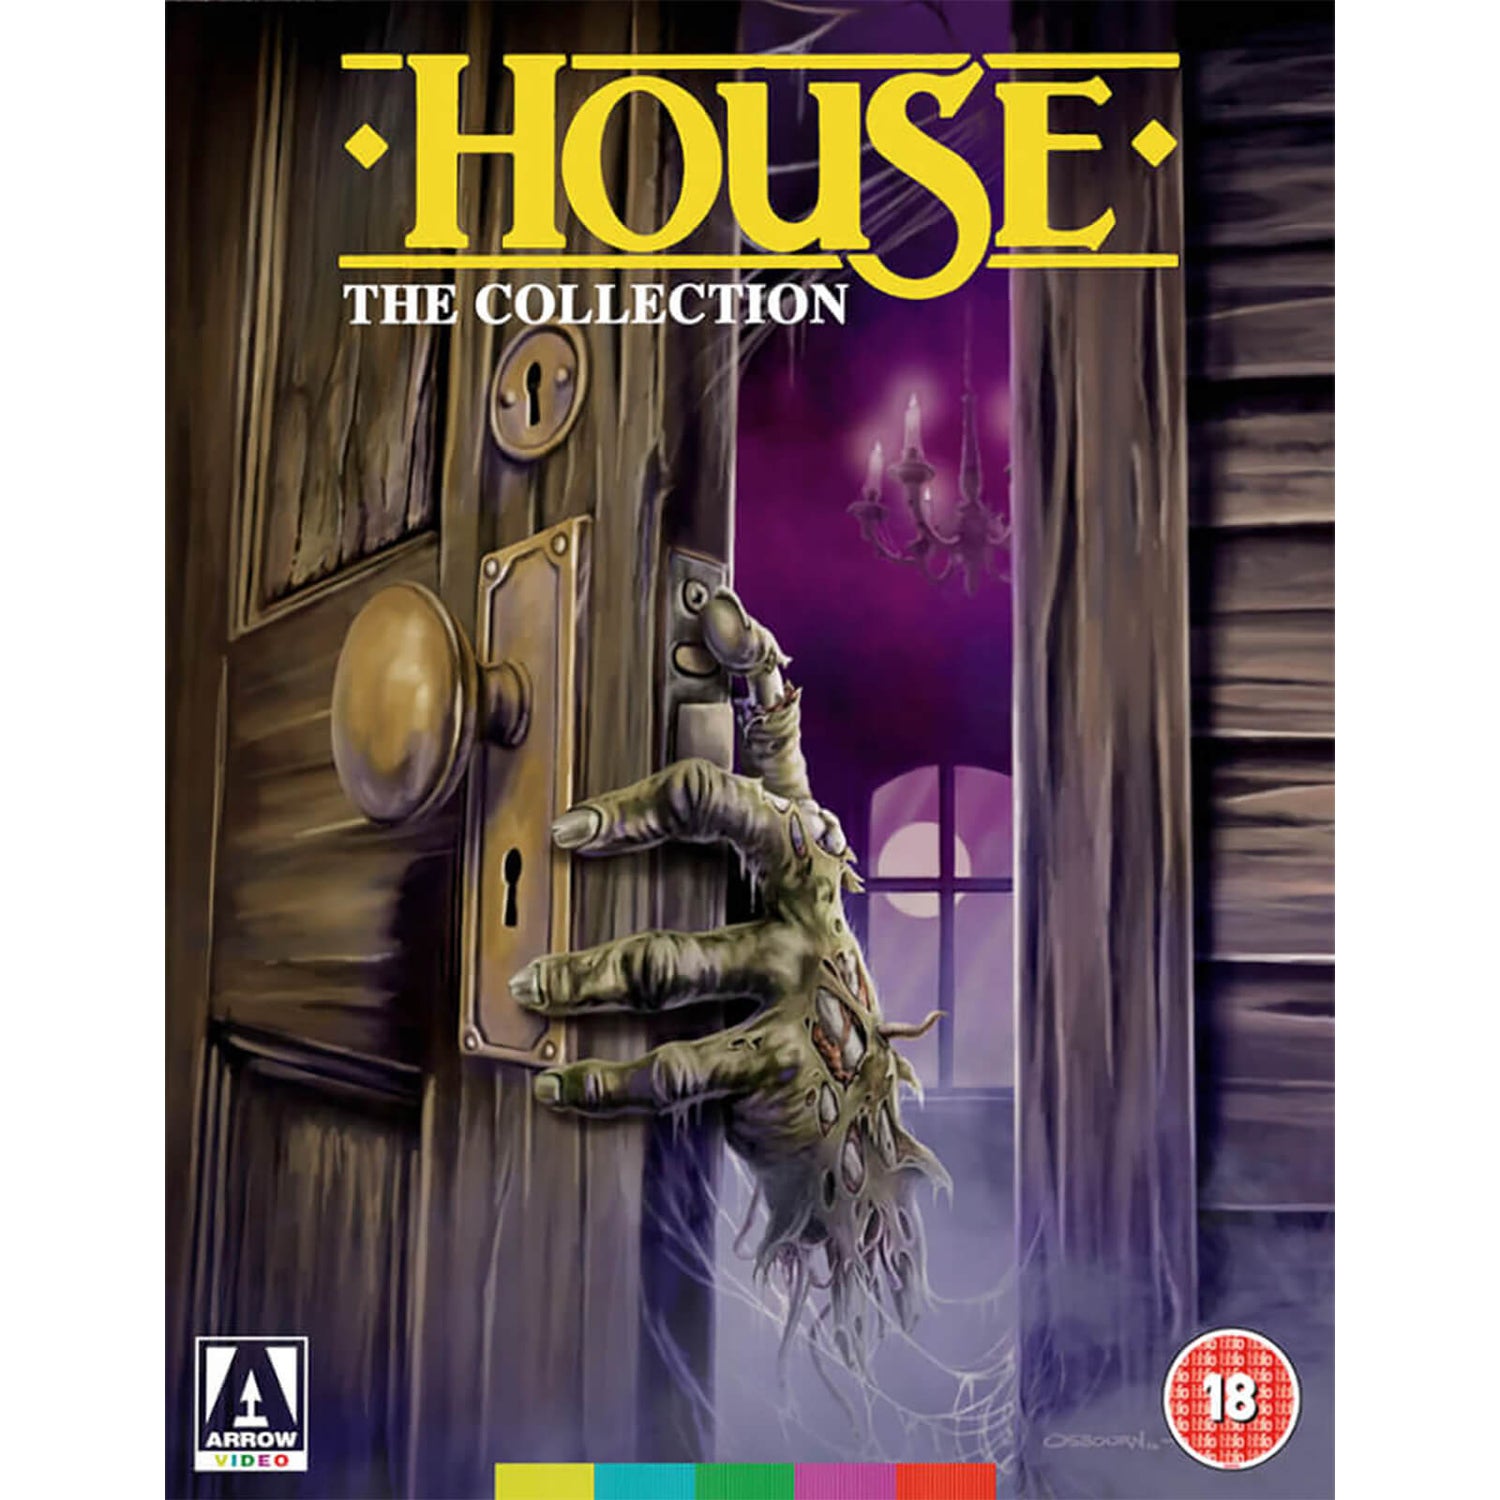 The Full House (House I, II, III, IV) (Includes DVD)